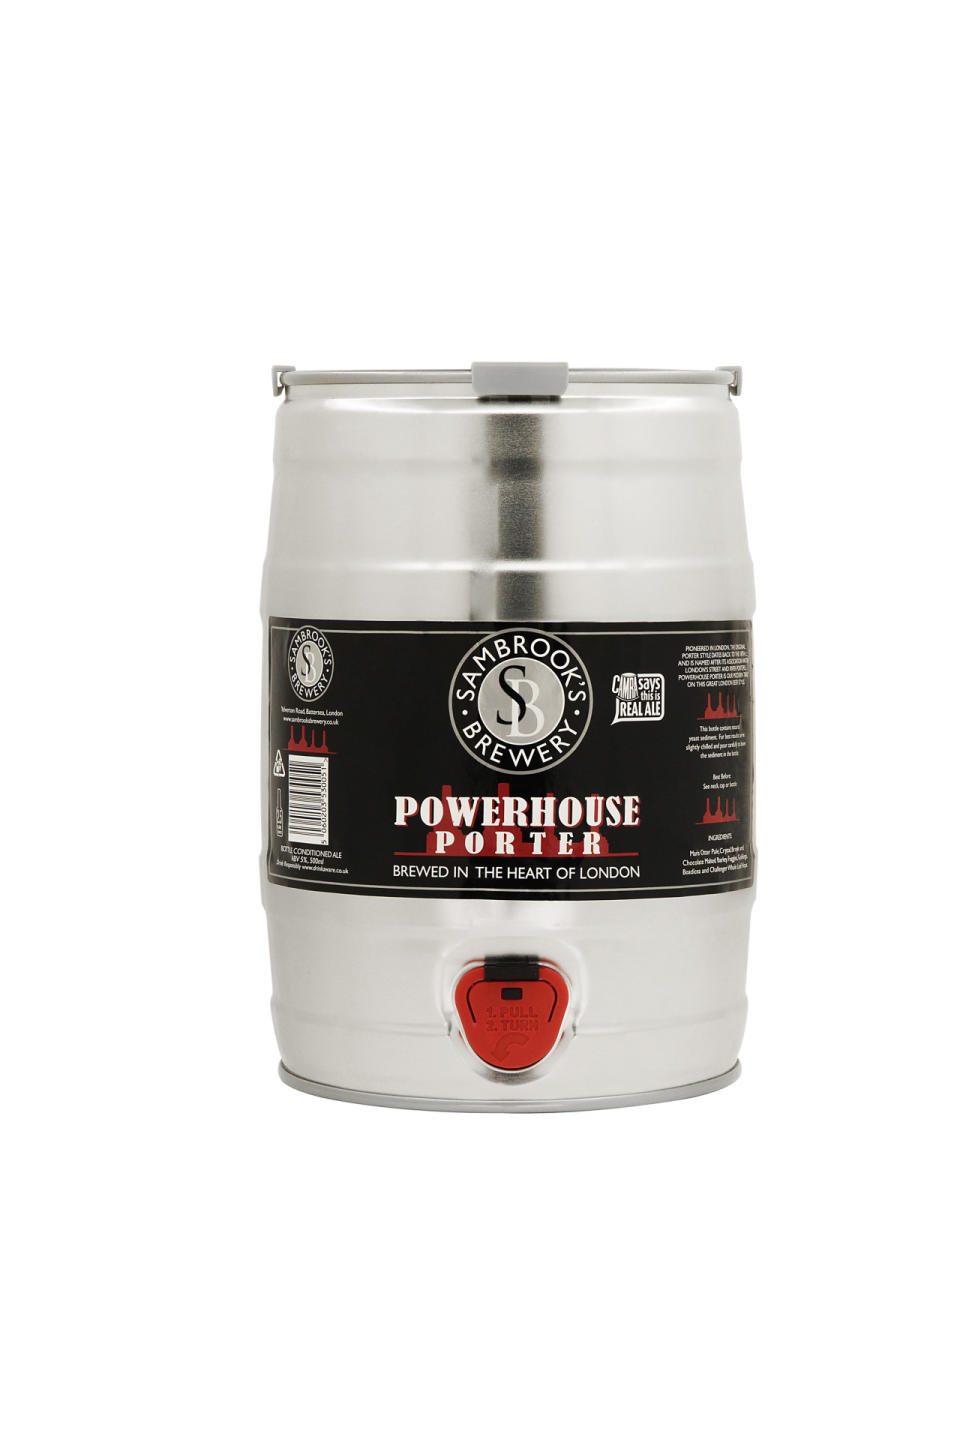 Sambrooks Brewery Powerhouse Porter 18-pint ‘minipin’, £36.50